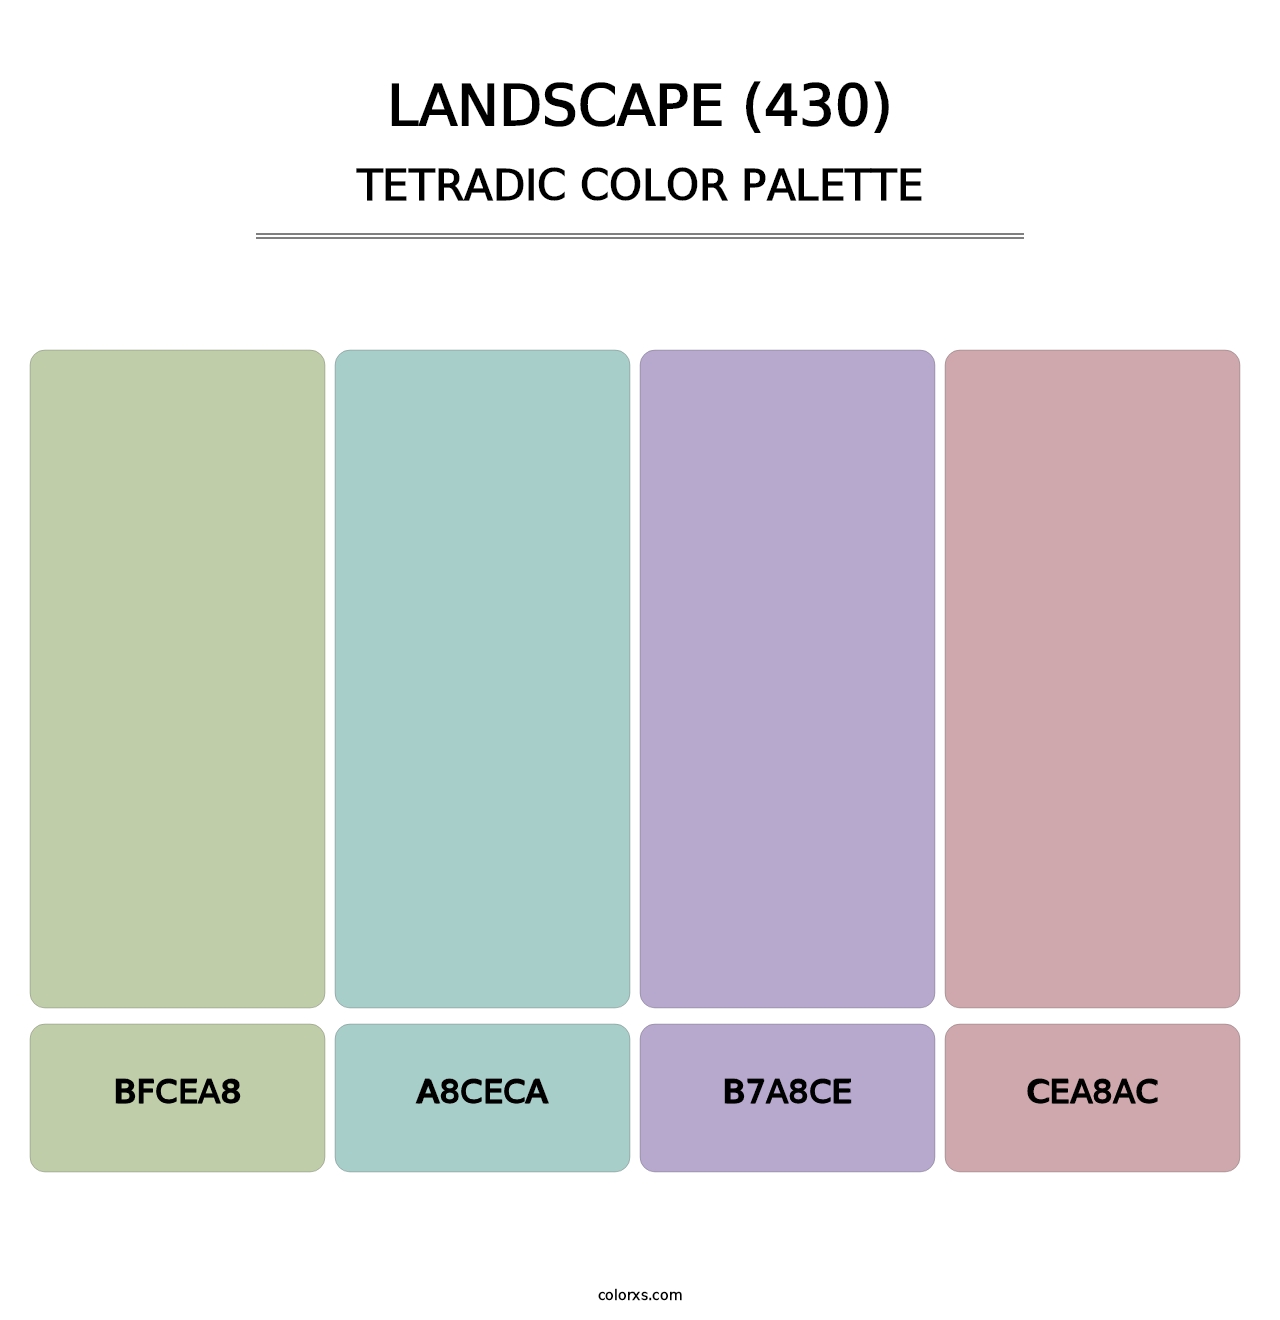 Landscape (430) - Tetradic Color Palette